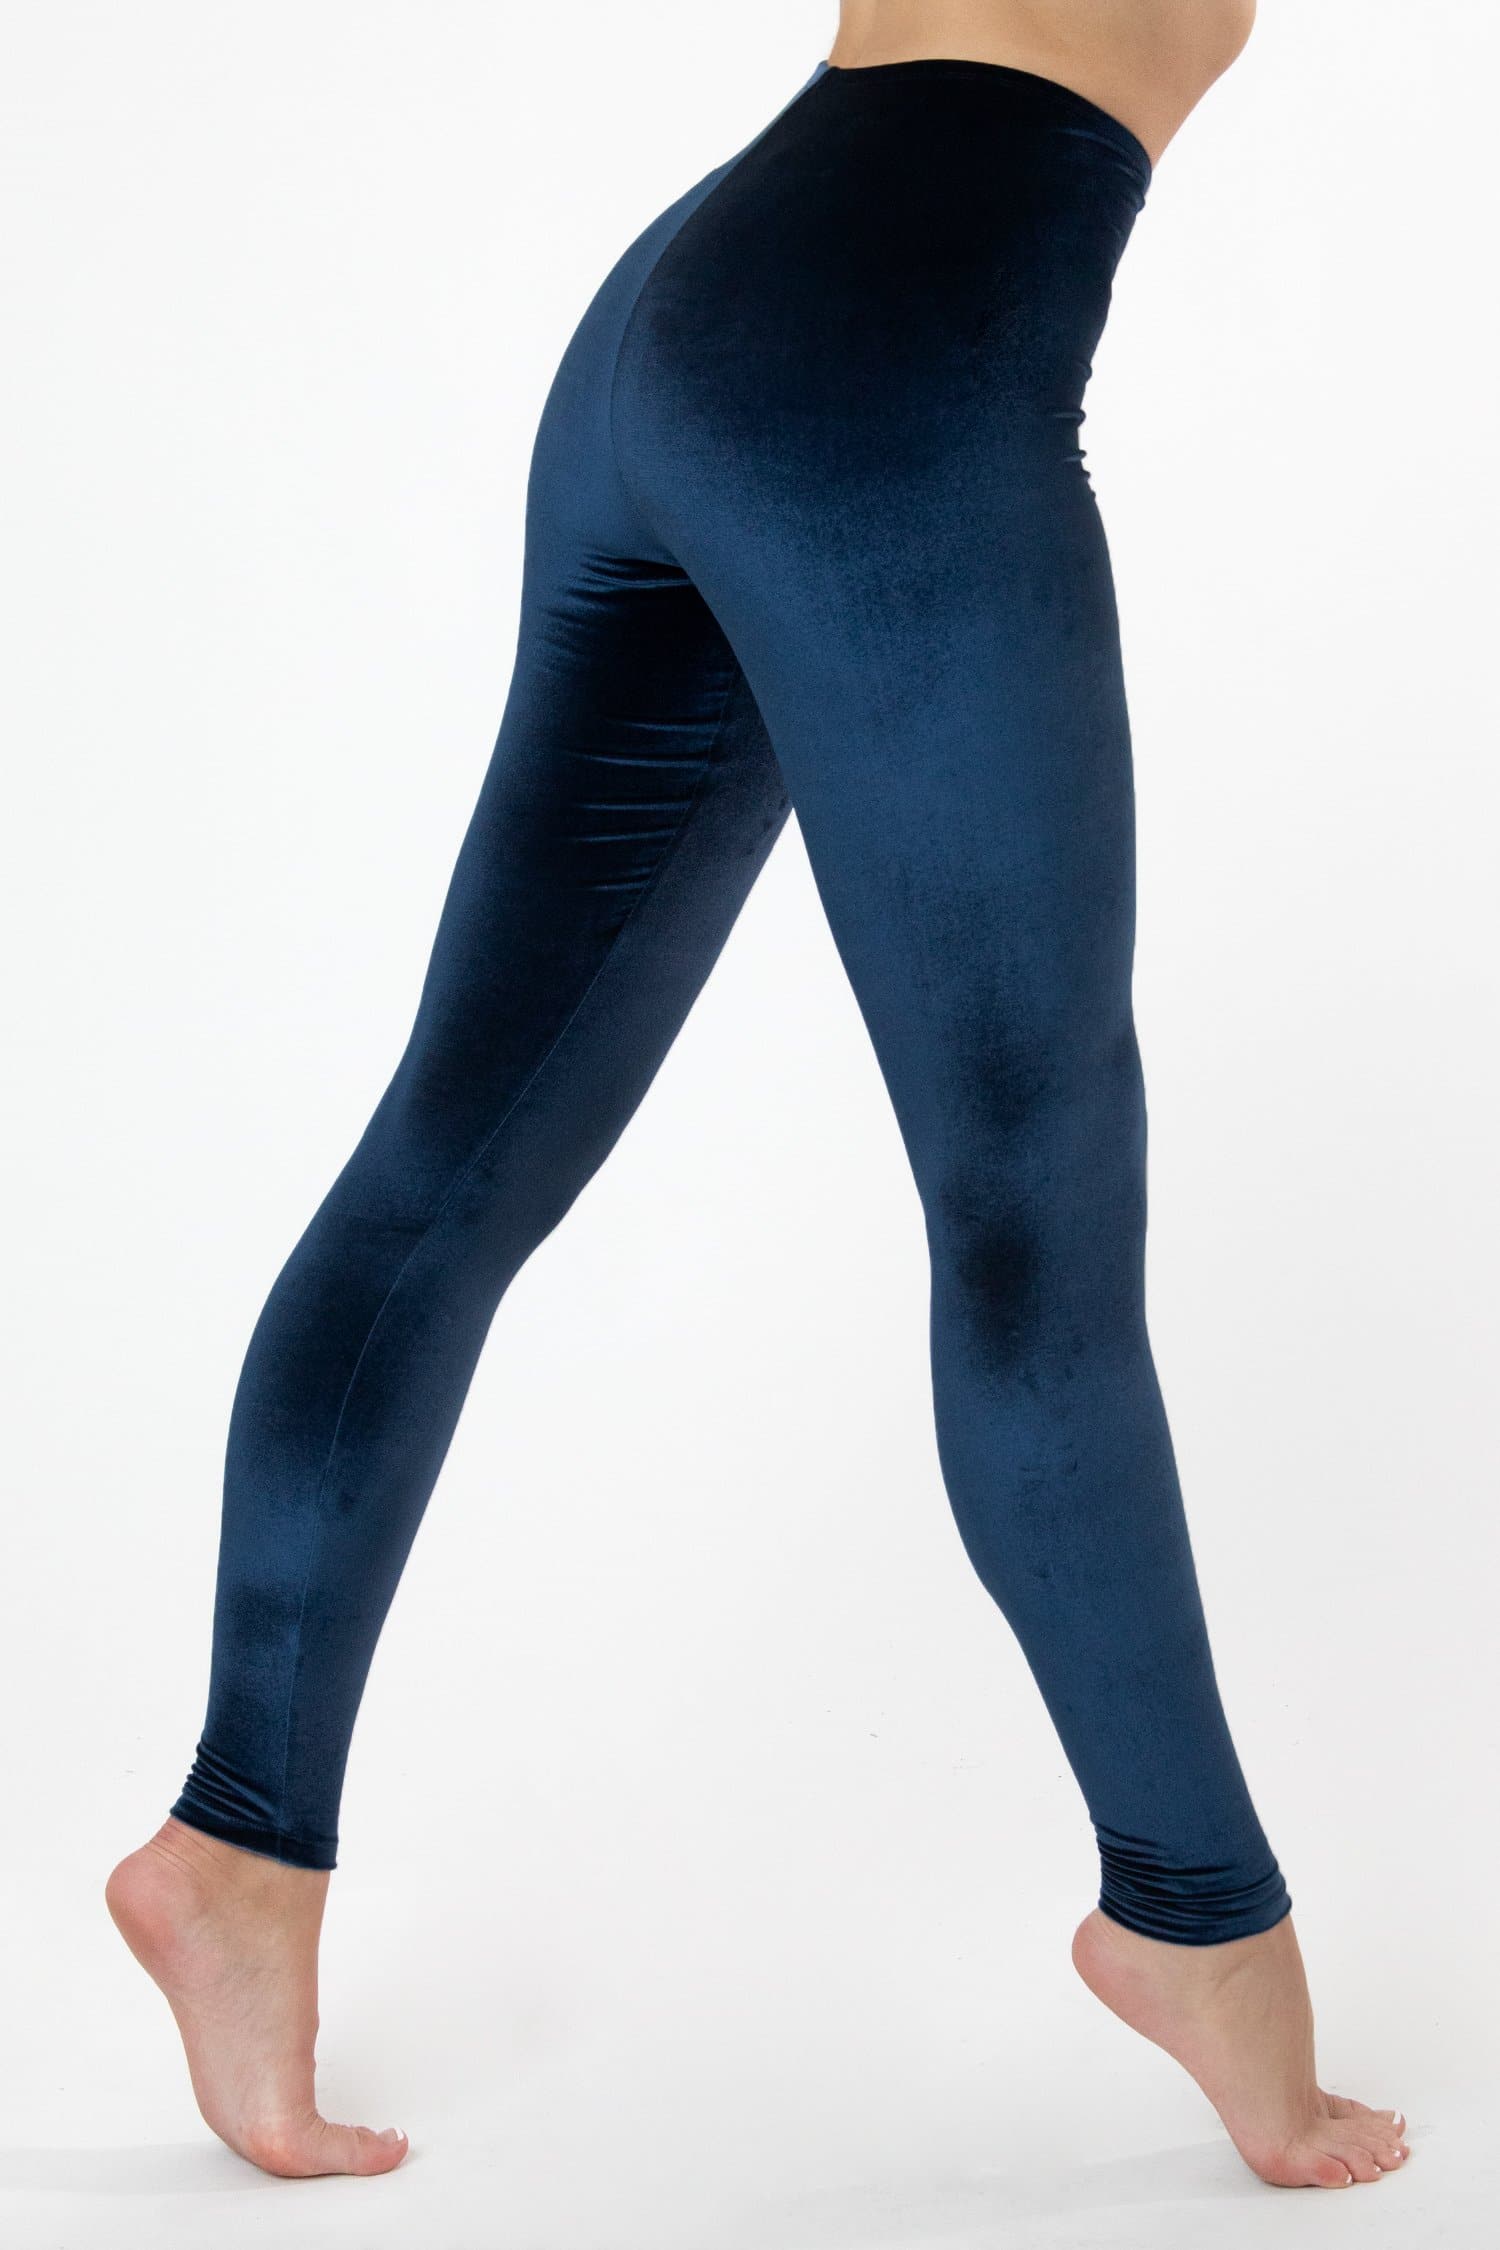 Conceited Velour Velvet Leggings for Women, Navy Blue, Medium